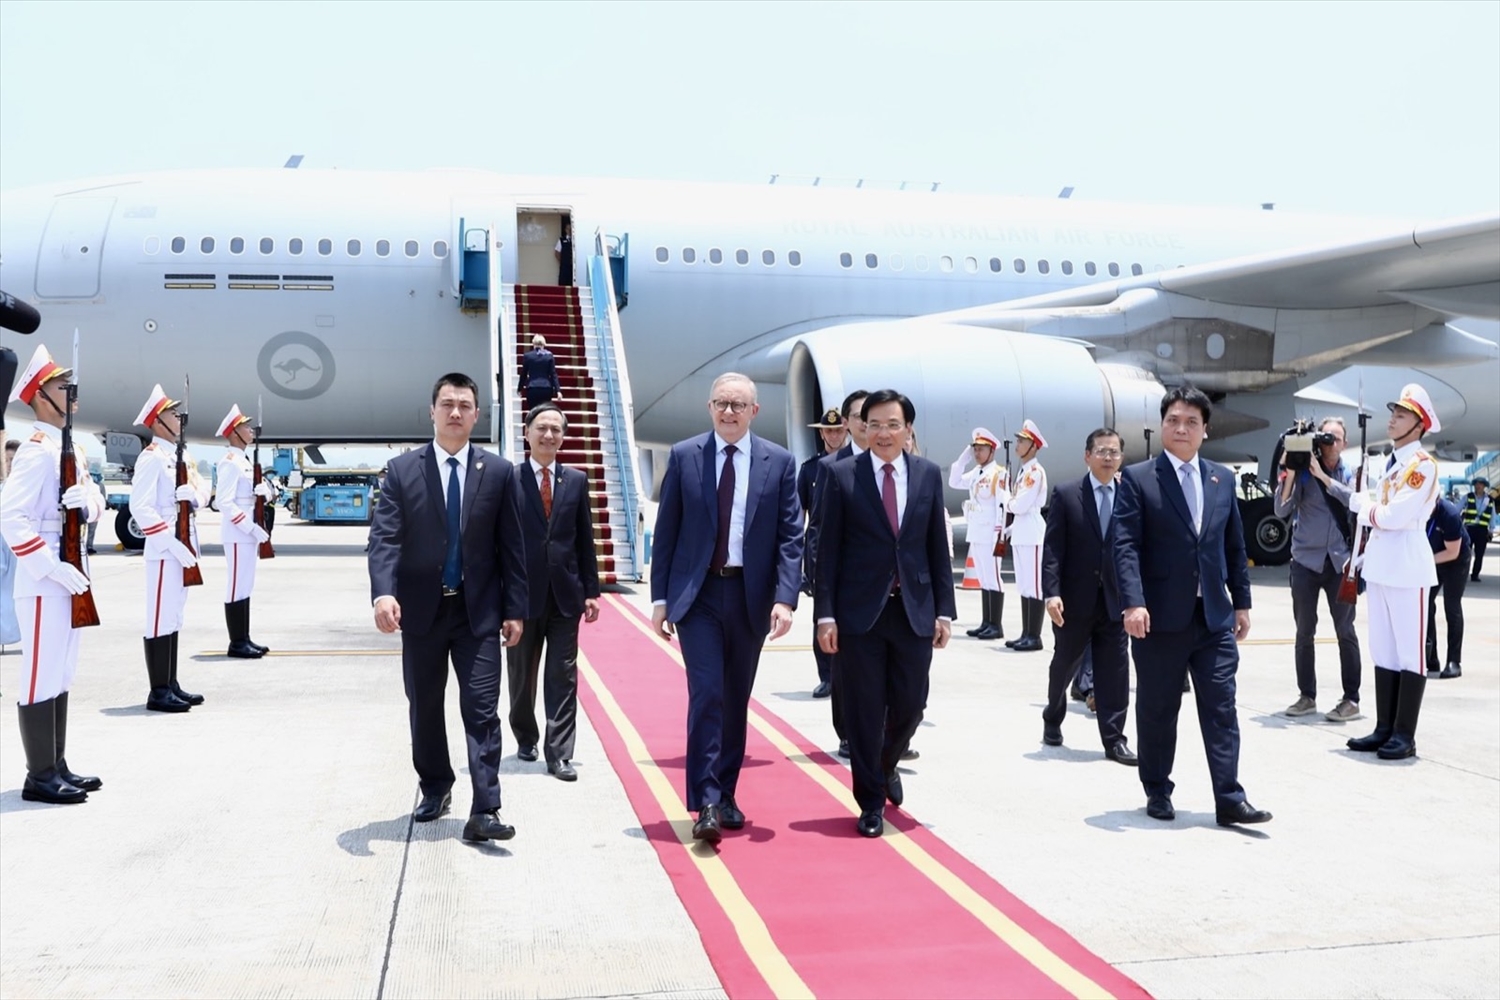 Chuyến thăm chính thức Việt Nam của Thủ tướng Australia Anthony Albanese sẽ tiếp tục góp phần củng cố tin cậy chính trị, thúc đẩy hợp tác nhiều mặt giữa hai quốc gia Việt Nam-Australia - Ảnh: VGP/Nhật Bắc